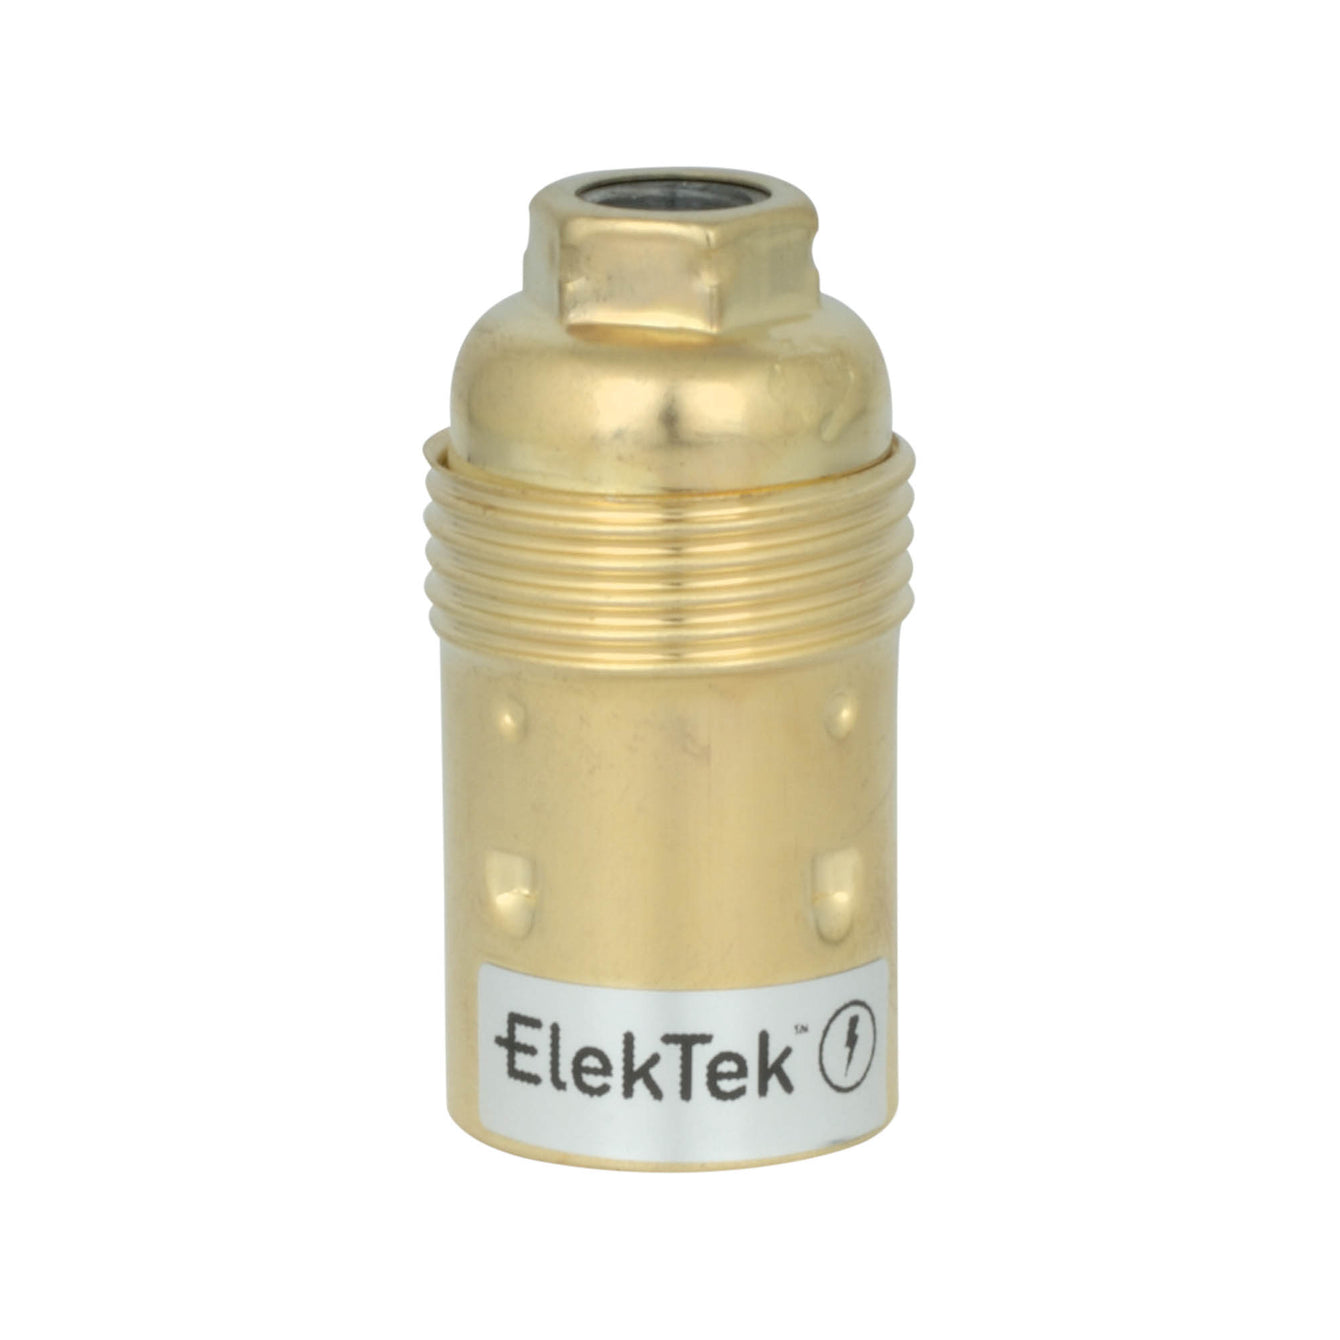 ElekTek SES E14 Lamp Holder 10mm Entry Small Edison Screw Earthed Plain Skirt Cord Grip Brass - Buy It Better Nickel